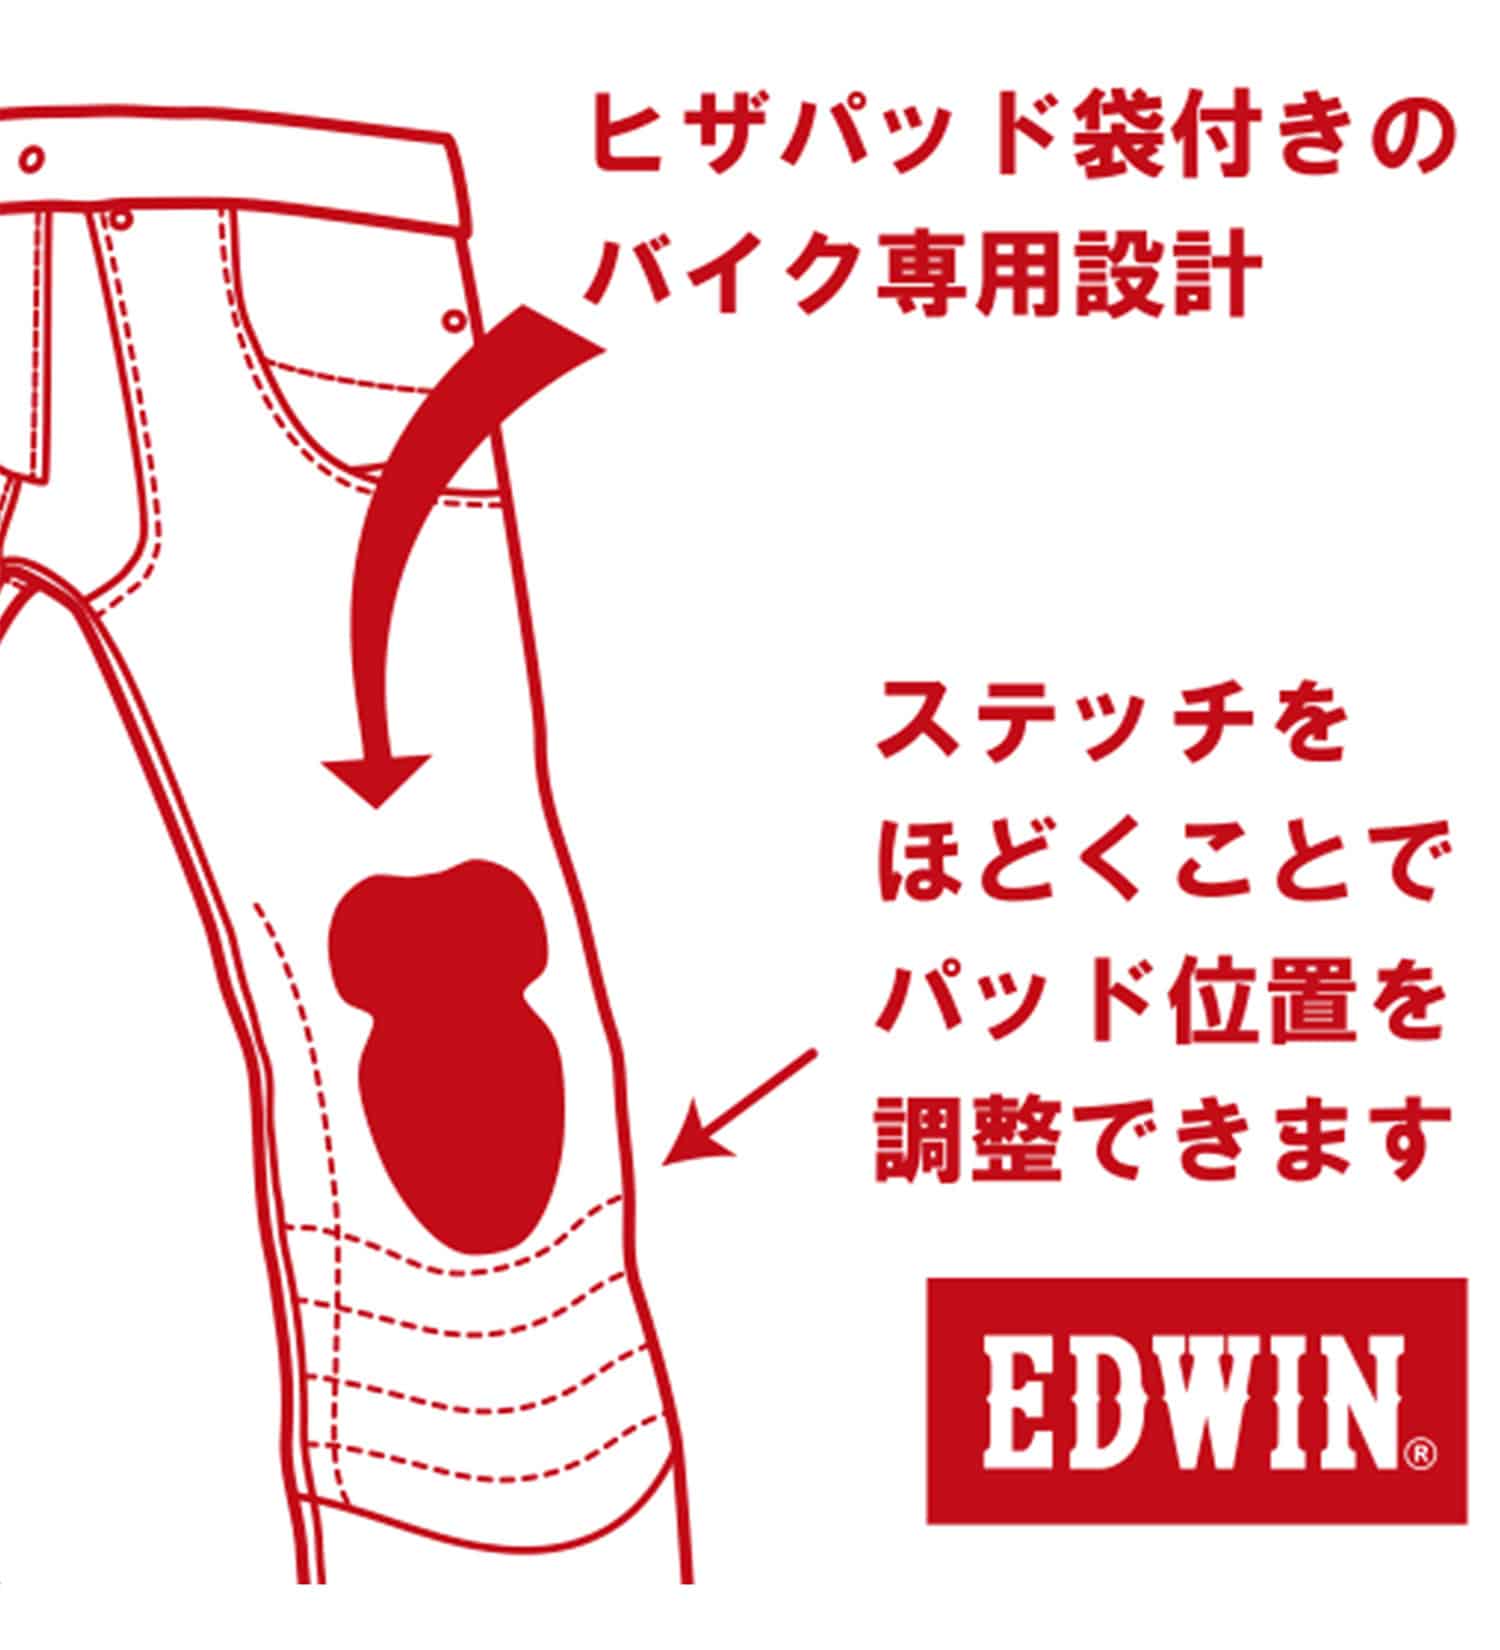 EDWIN(エドウイン)のバイク用 コーデュラストレッチデニム ハイパーストレッチCORDURA denim fabric|パンツ/デニムパンツ/メンズ|中色ブルー